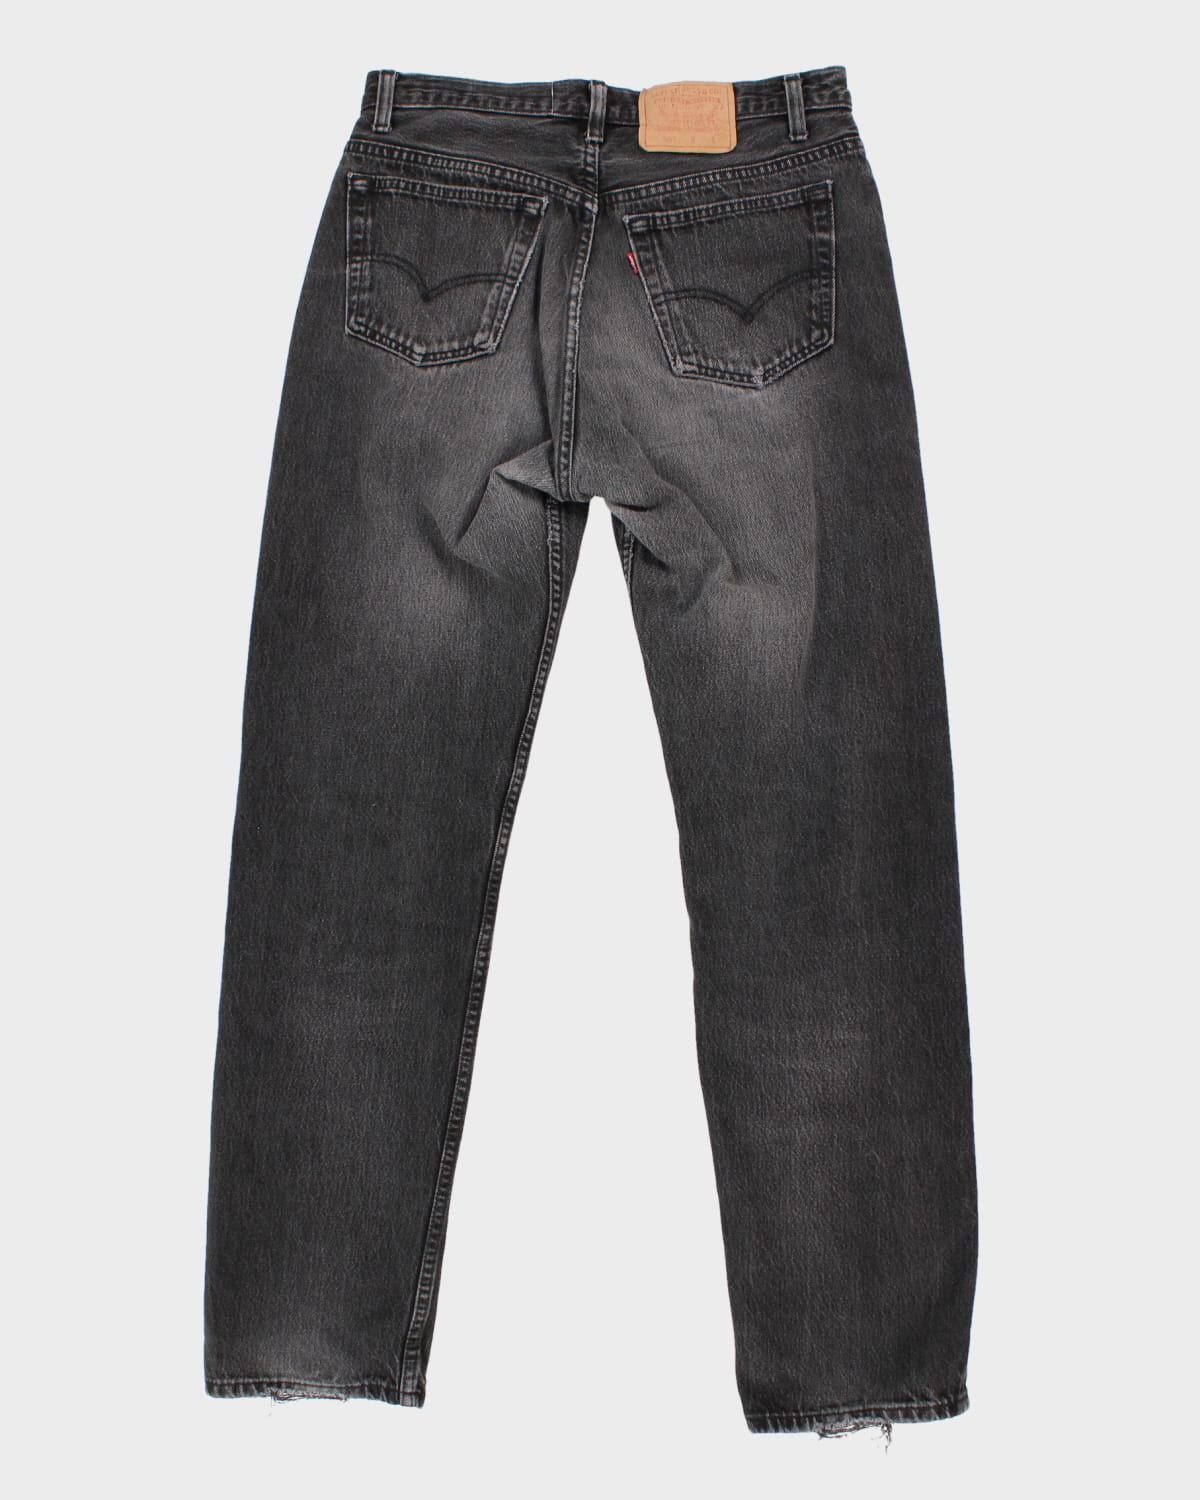 Vintage Levi's 501 Black Jeans - W33 L32